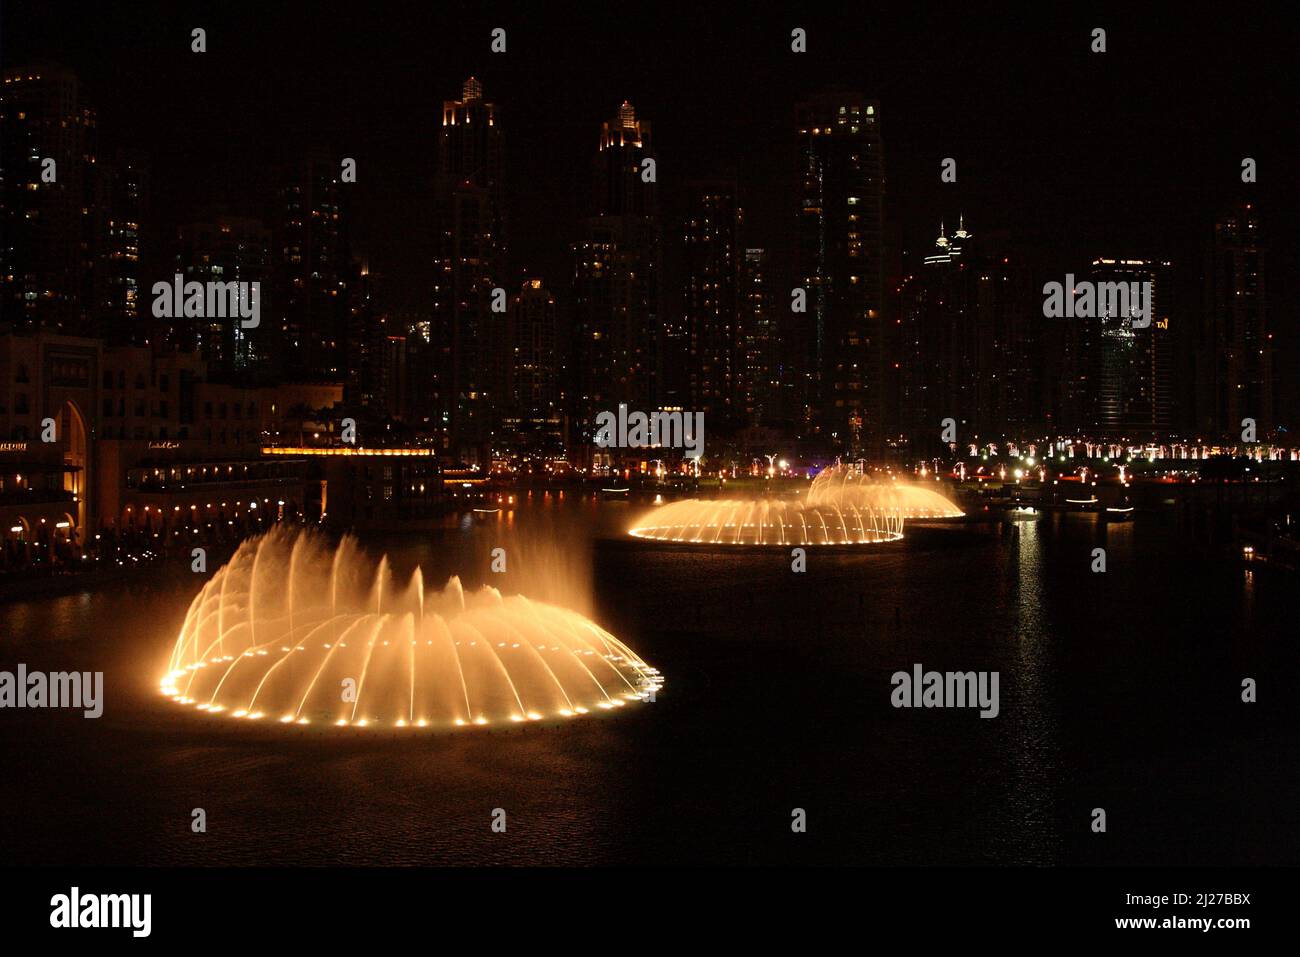 Dubai - Dubai Fountain / Dubai - The Dubai Fountain / Stock Photo